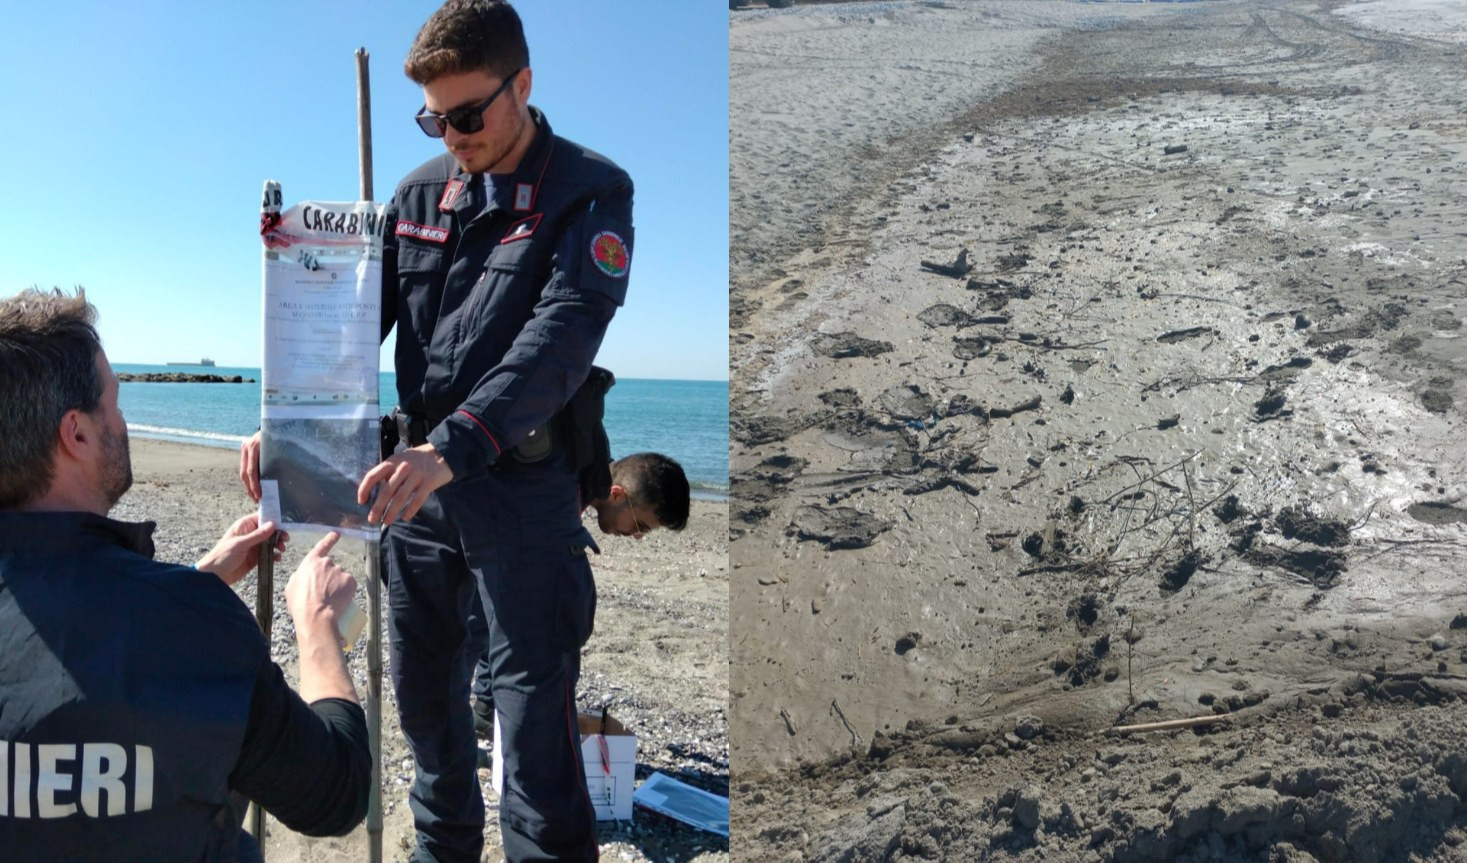 Sabbia non conforme, pozze di fango e acqua torbida: spiaggia sequestrata a Sarzana